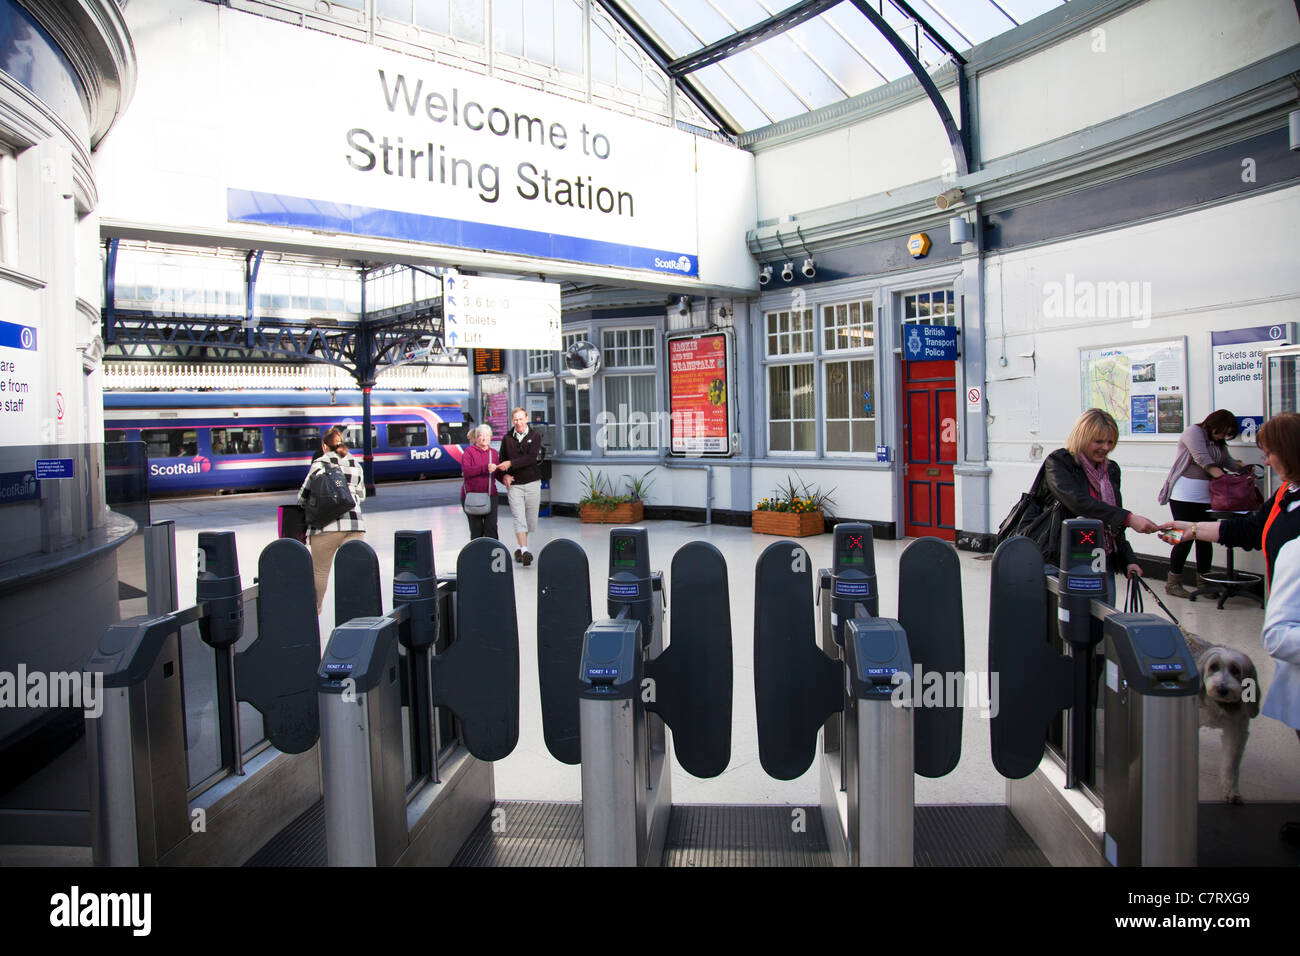 Willkommen Sie bei Stirling Bahnhof in Schottland Bahnverbindung, Ausgang und Eingang zum trainieren Stockfoto